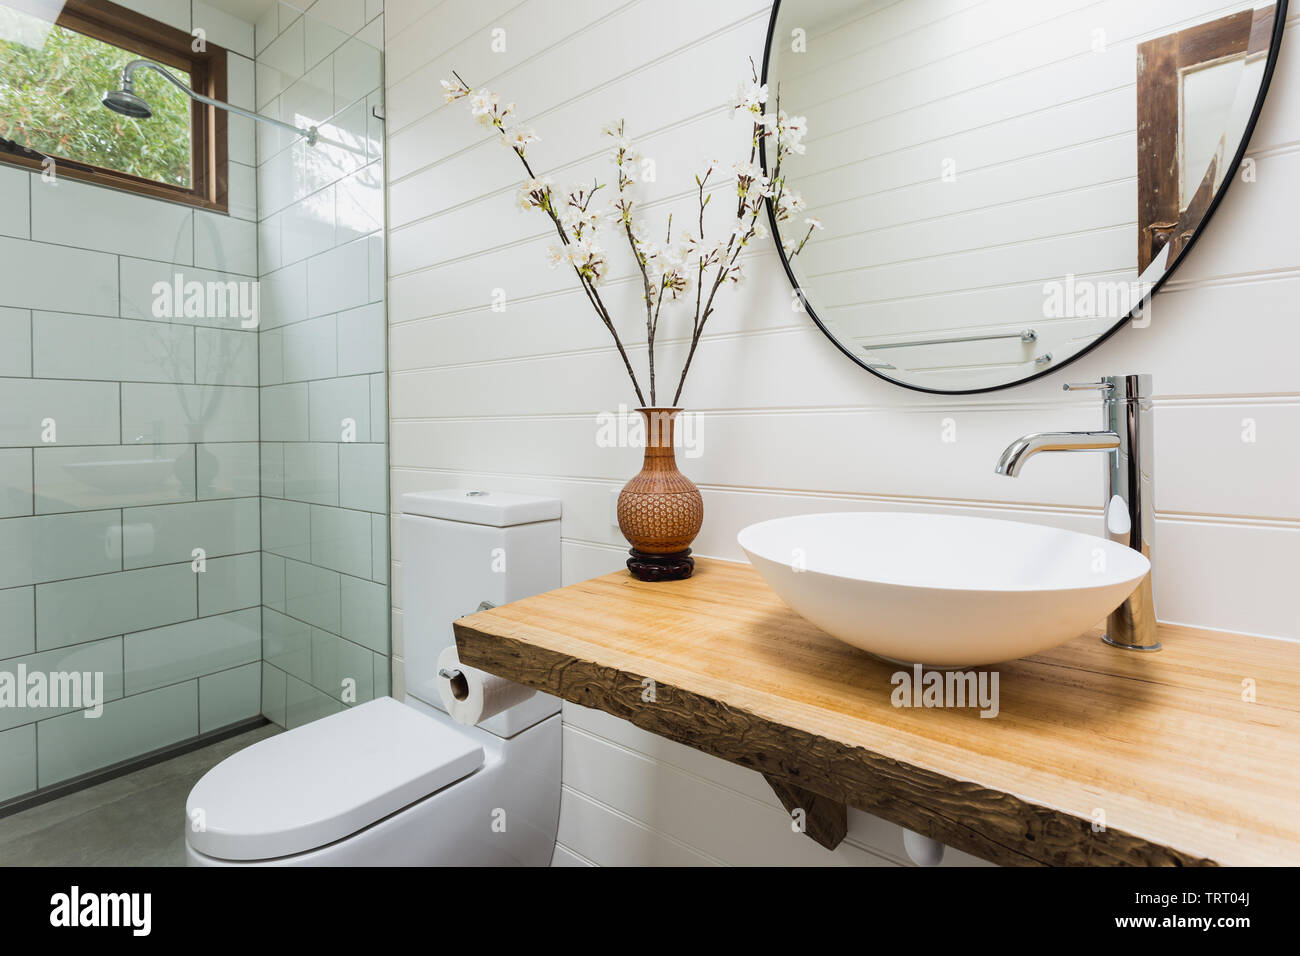 Badezimmer mit Waschbecken, Holzbank, runde, schwarze Spiegel und Dusche Stockfoto